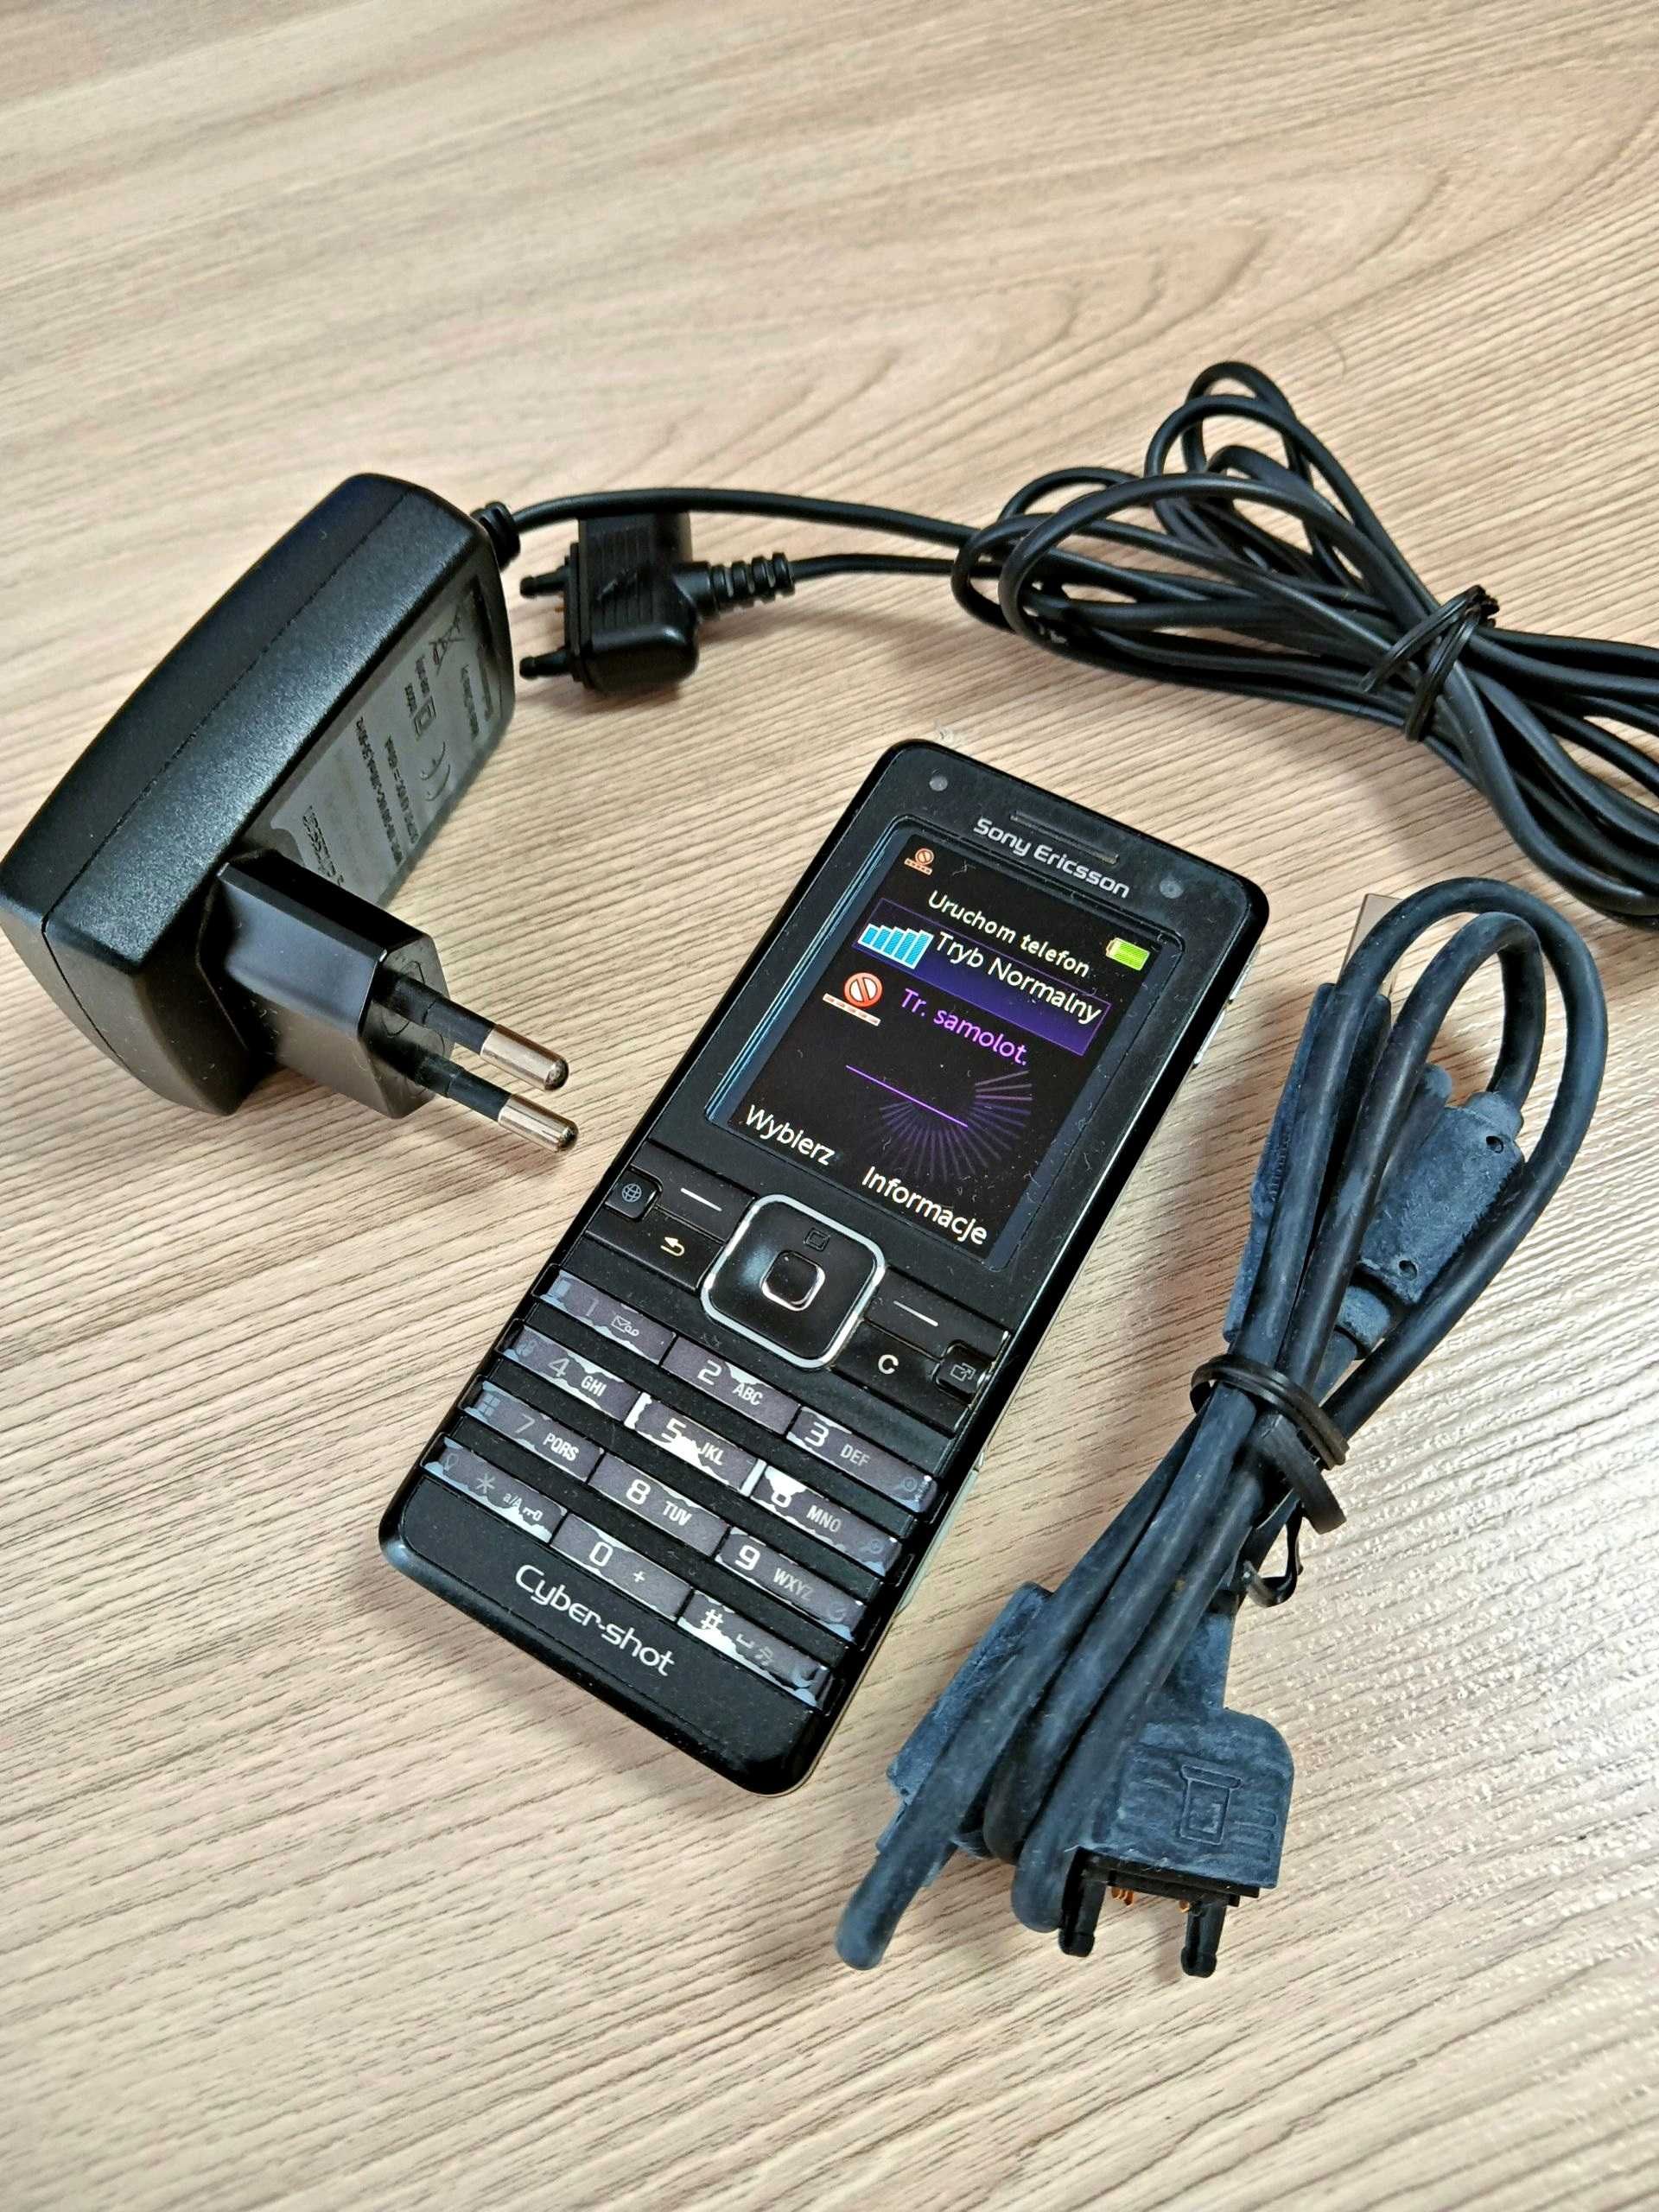 Telefon komórkowy Sony Ericsson K770i + ładowarka + kabel